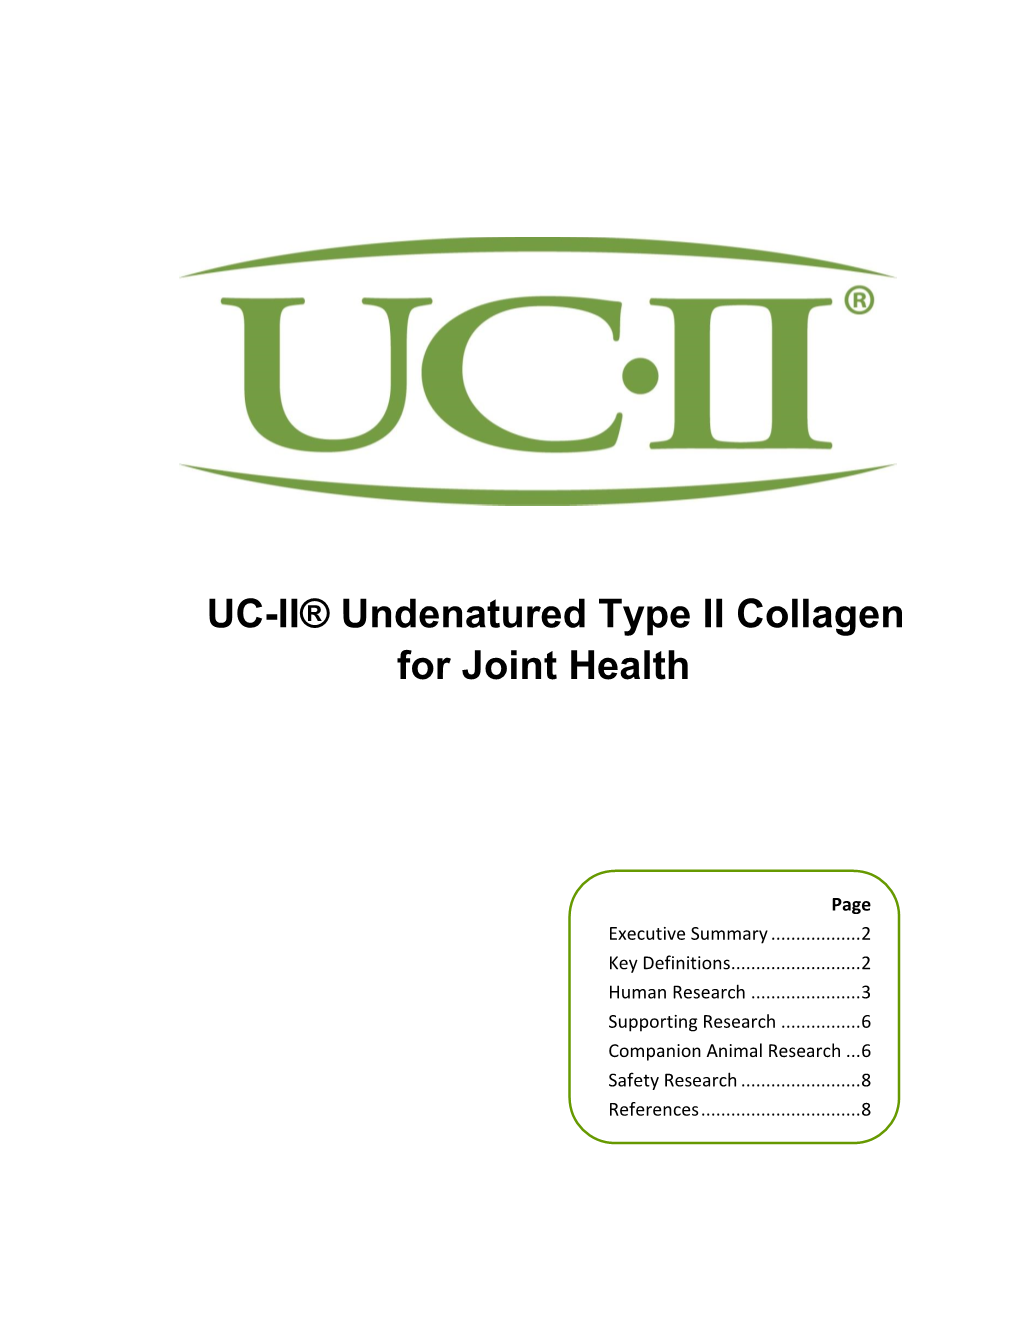 UC-II® Undenatured Type II Collagen for Joint Health